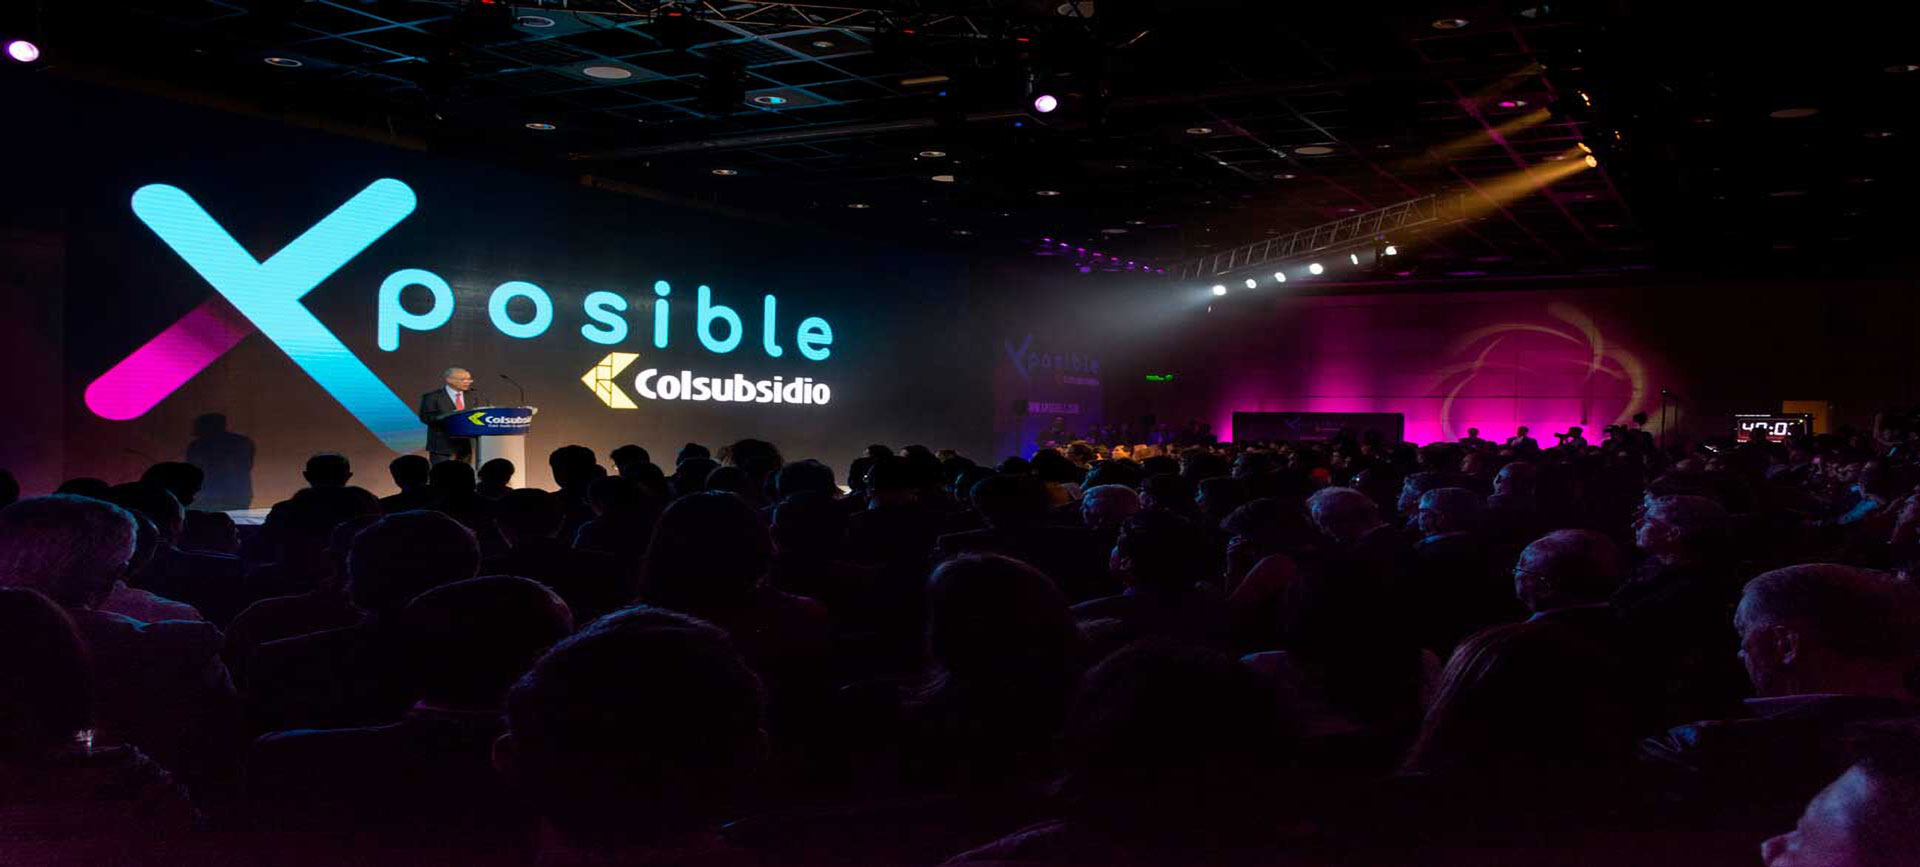 Una persona en conferencia, en un evento de Xposible colsubsidio.